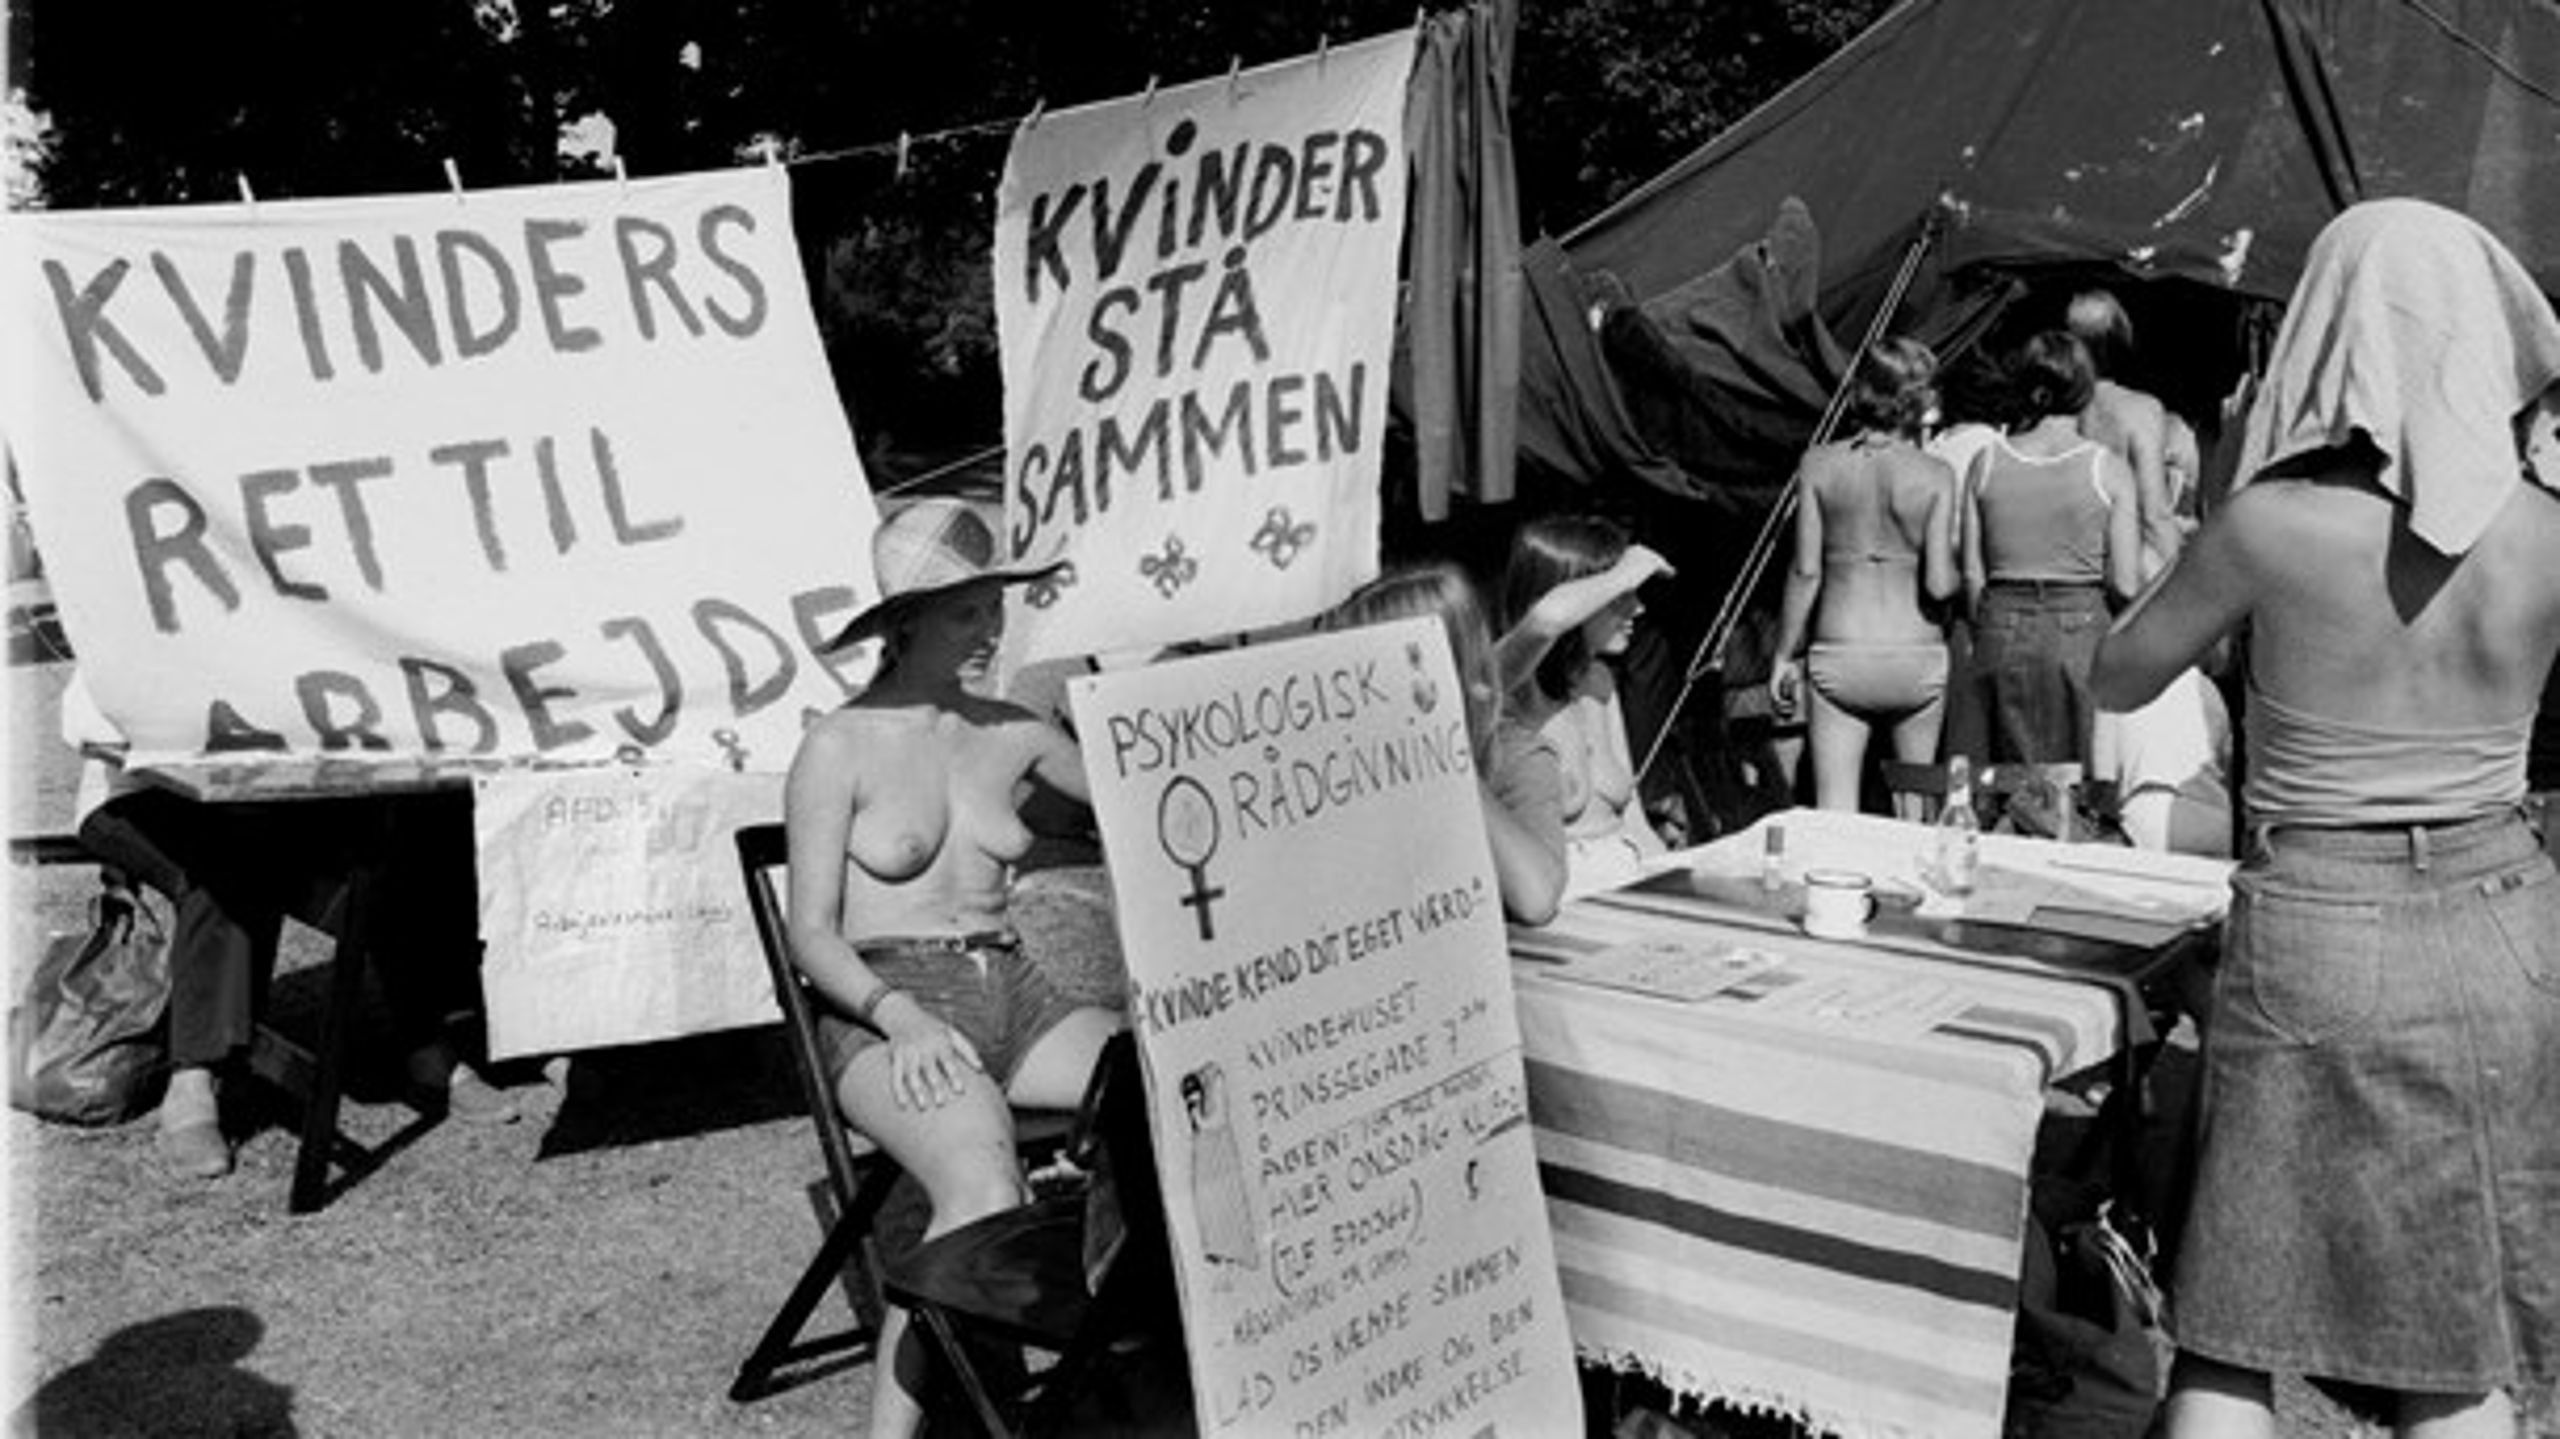 Dengang kvindekampen var mindre&nbsp;kugleskør. Kvindefestival i Fælledparken, 1976.&nbsp;